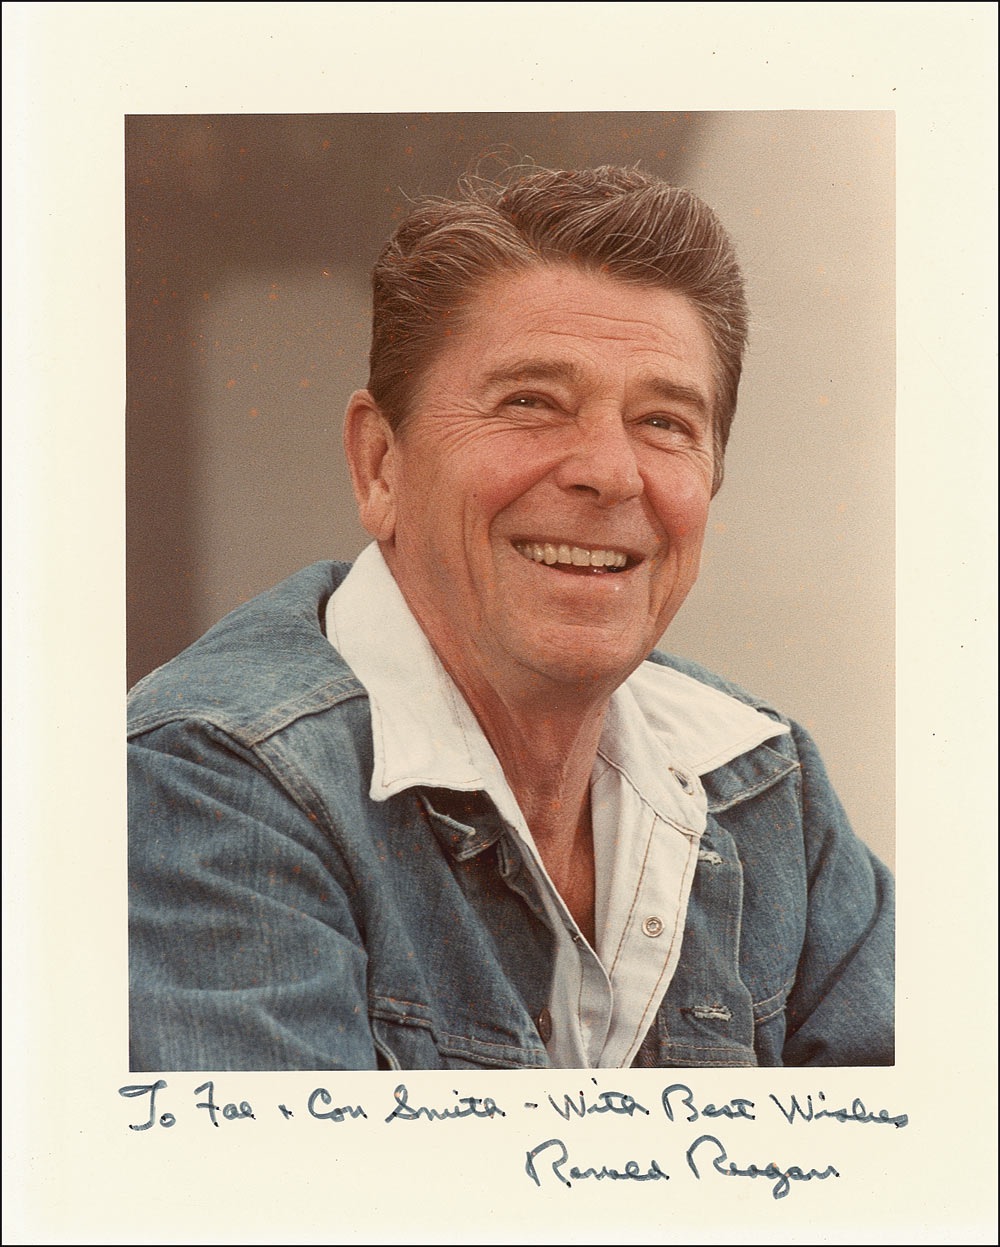 Lot #135 Ronald Reagan